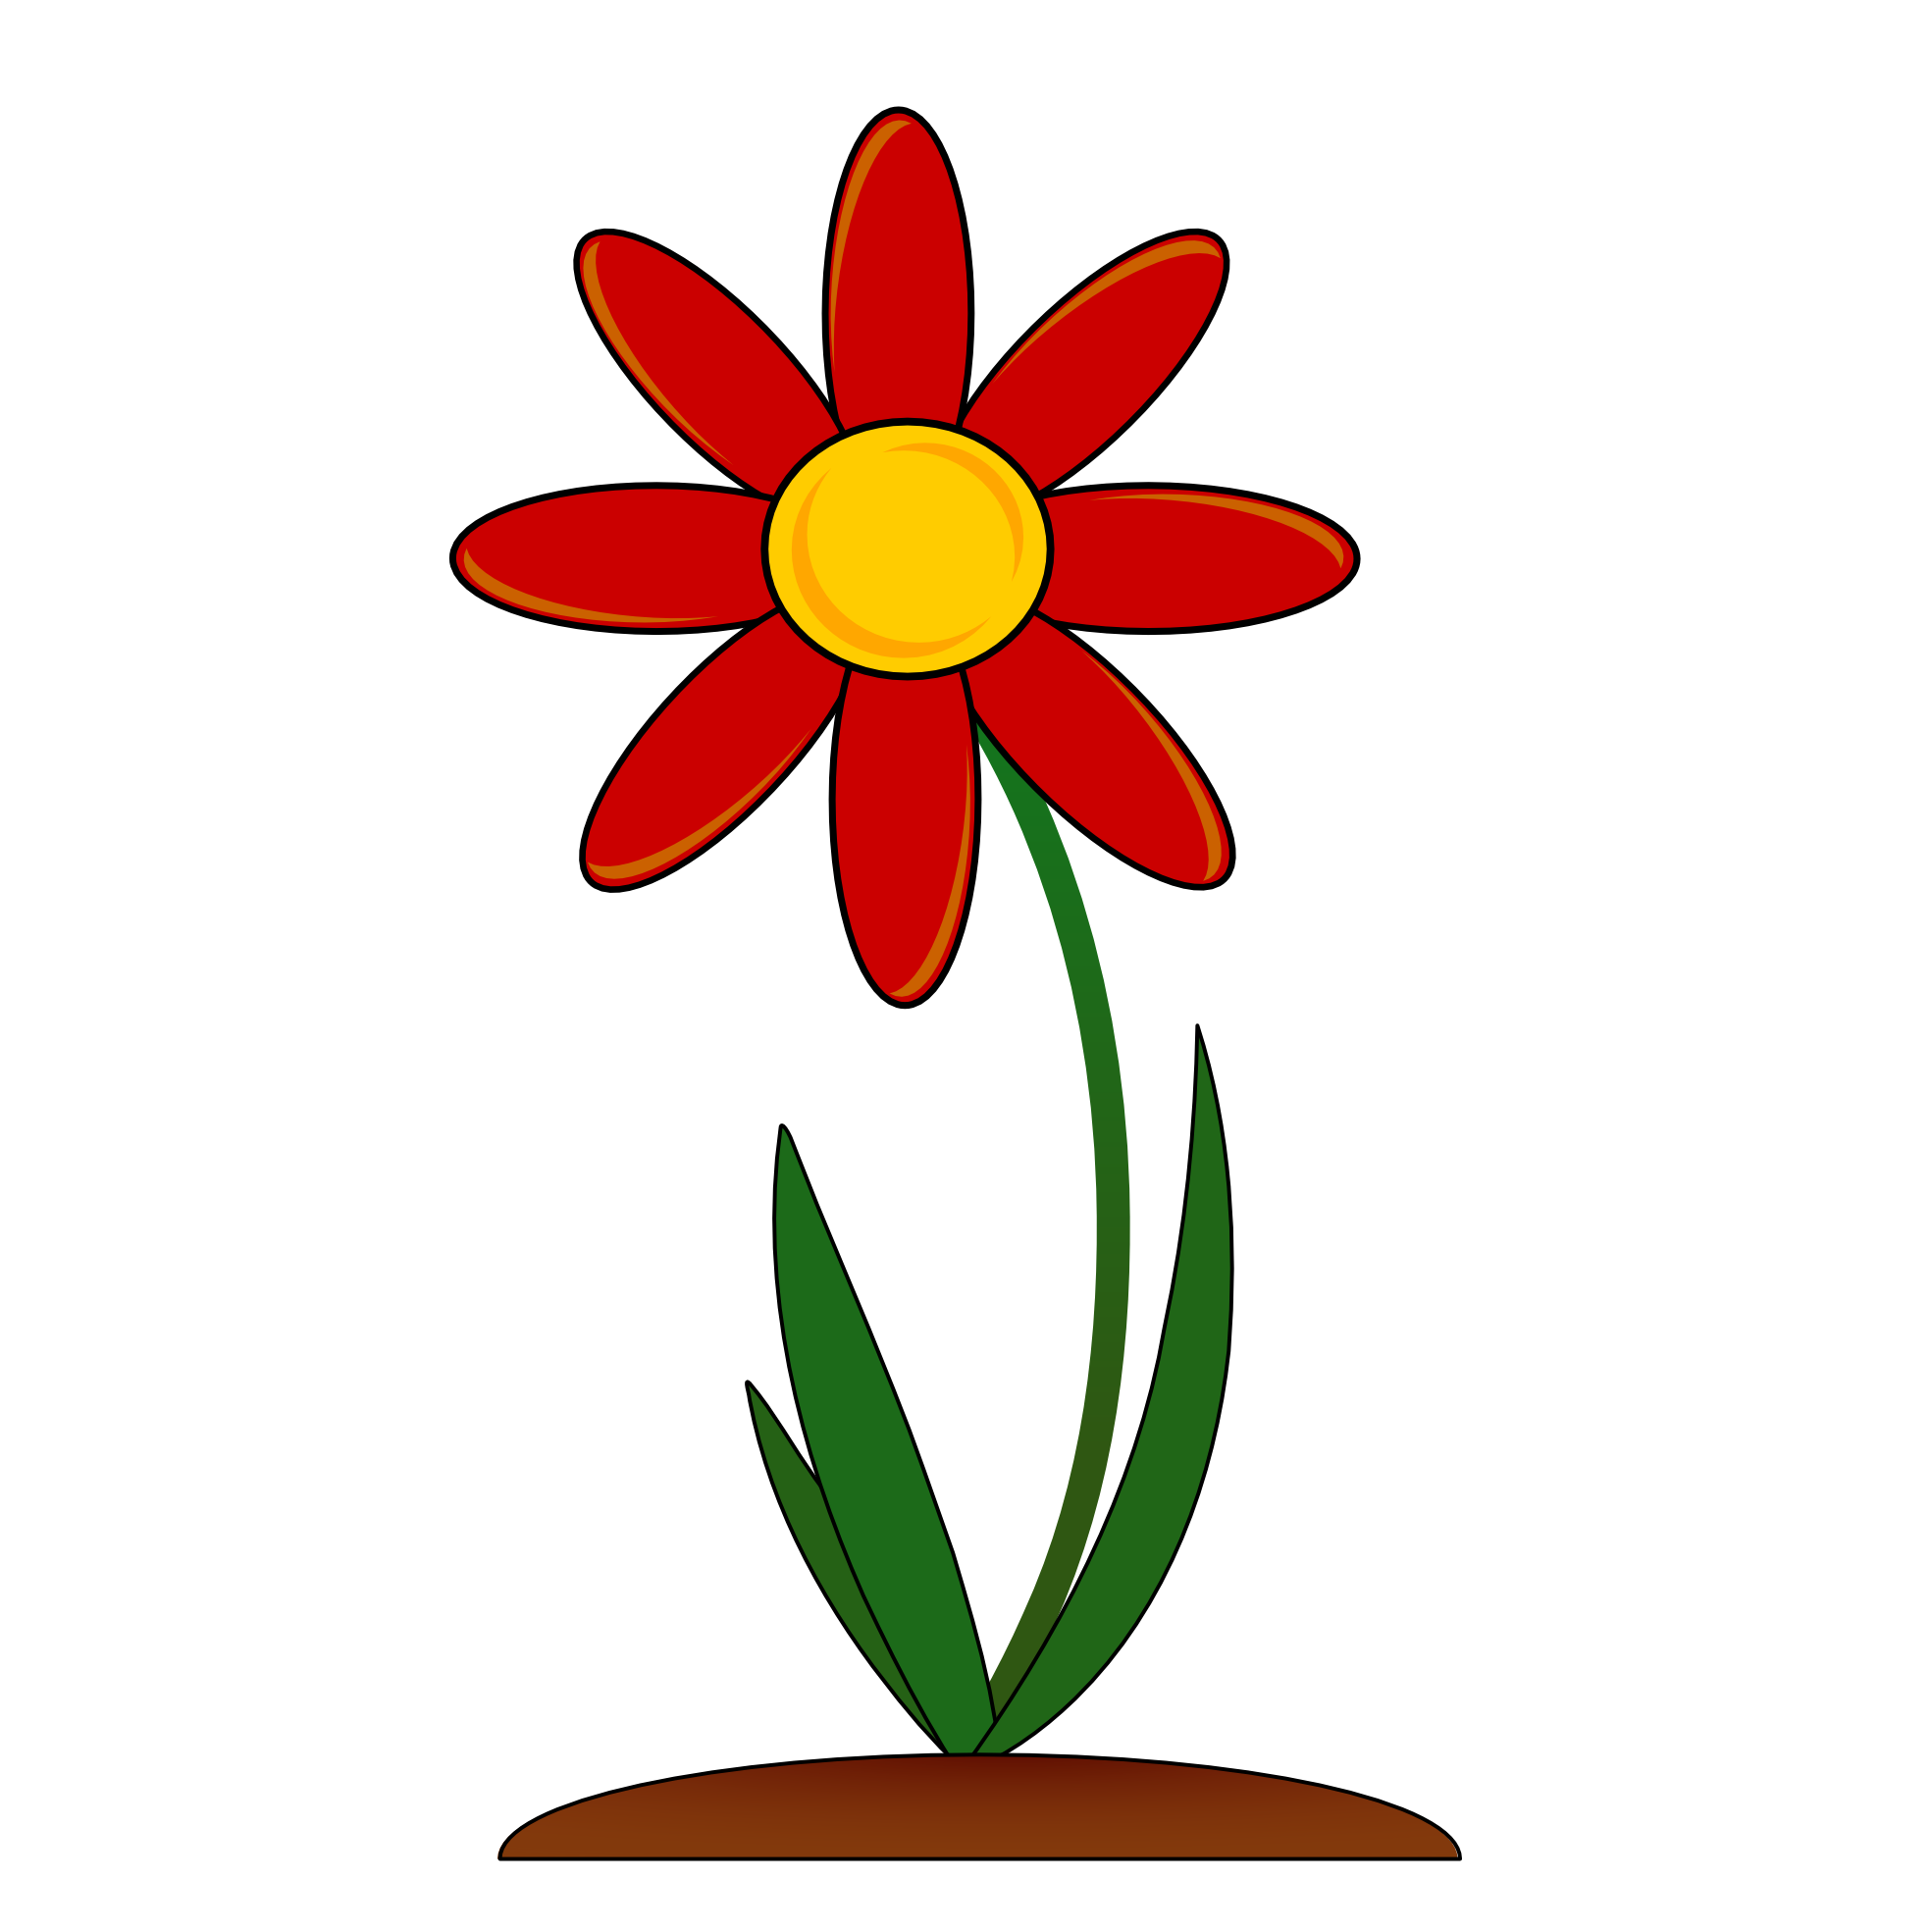 Red flower border.